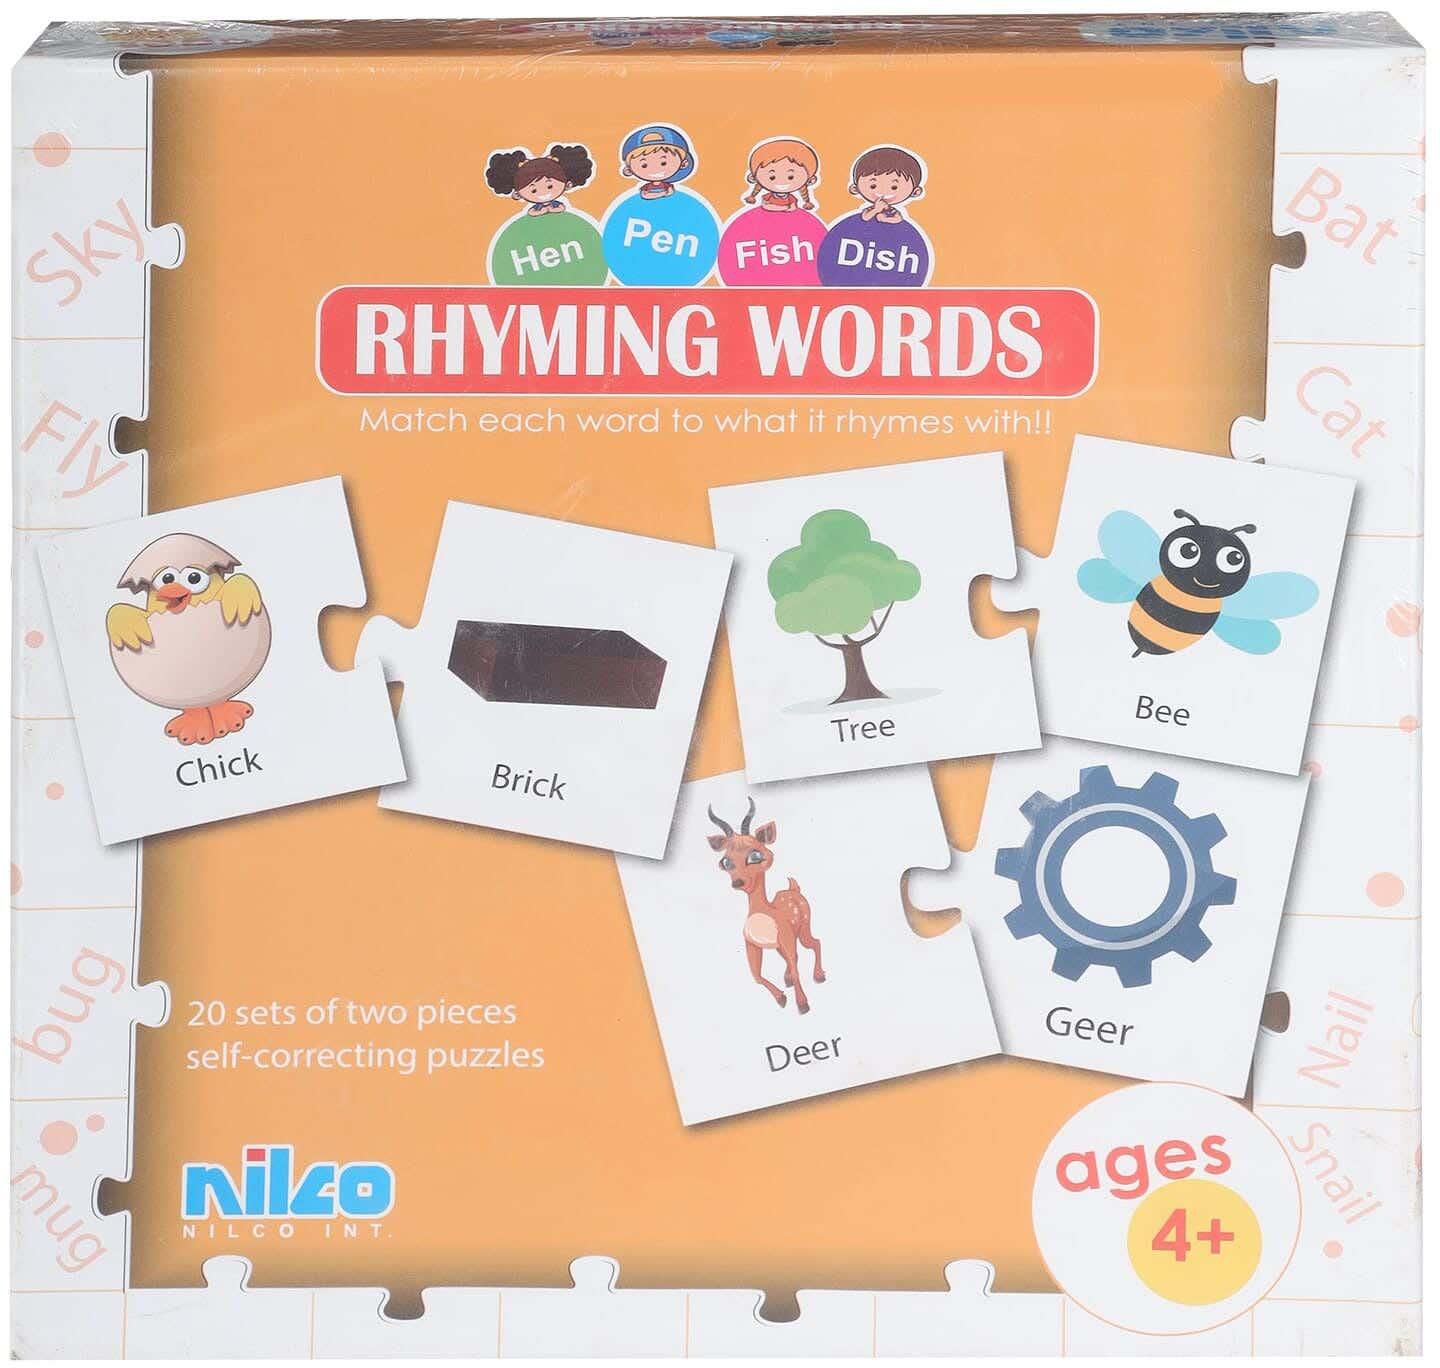 احصل على لعبة كروت تعليم كلمات لها نفس القافية للأطفال نيلكو - متعدد الالوان مع أفضل العروض | رنين.كوم